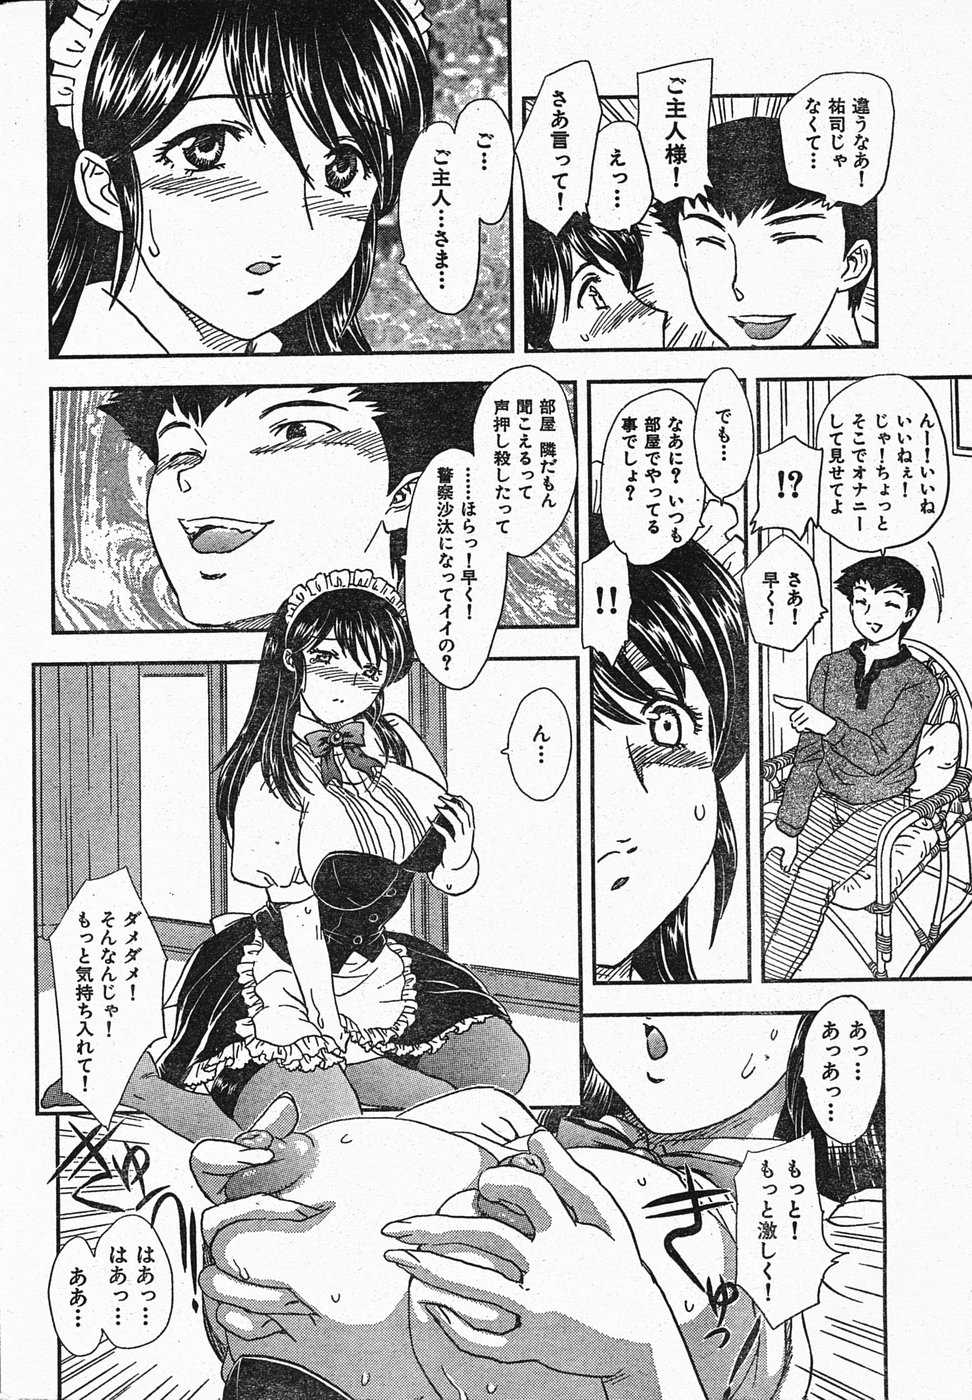 [2005.04.15]Comic Kairakuten Beast Volume 1 